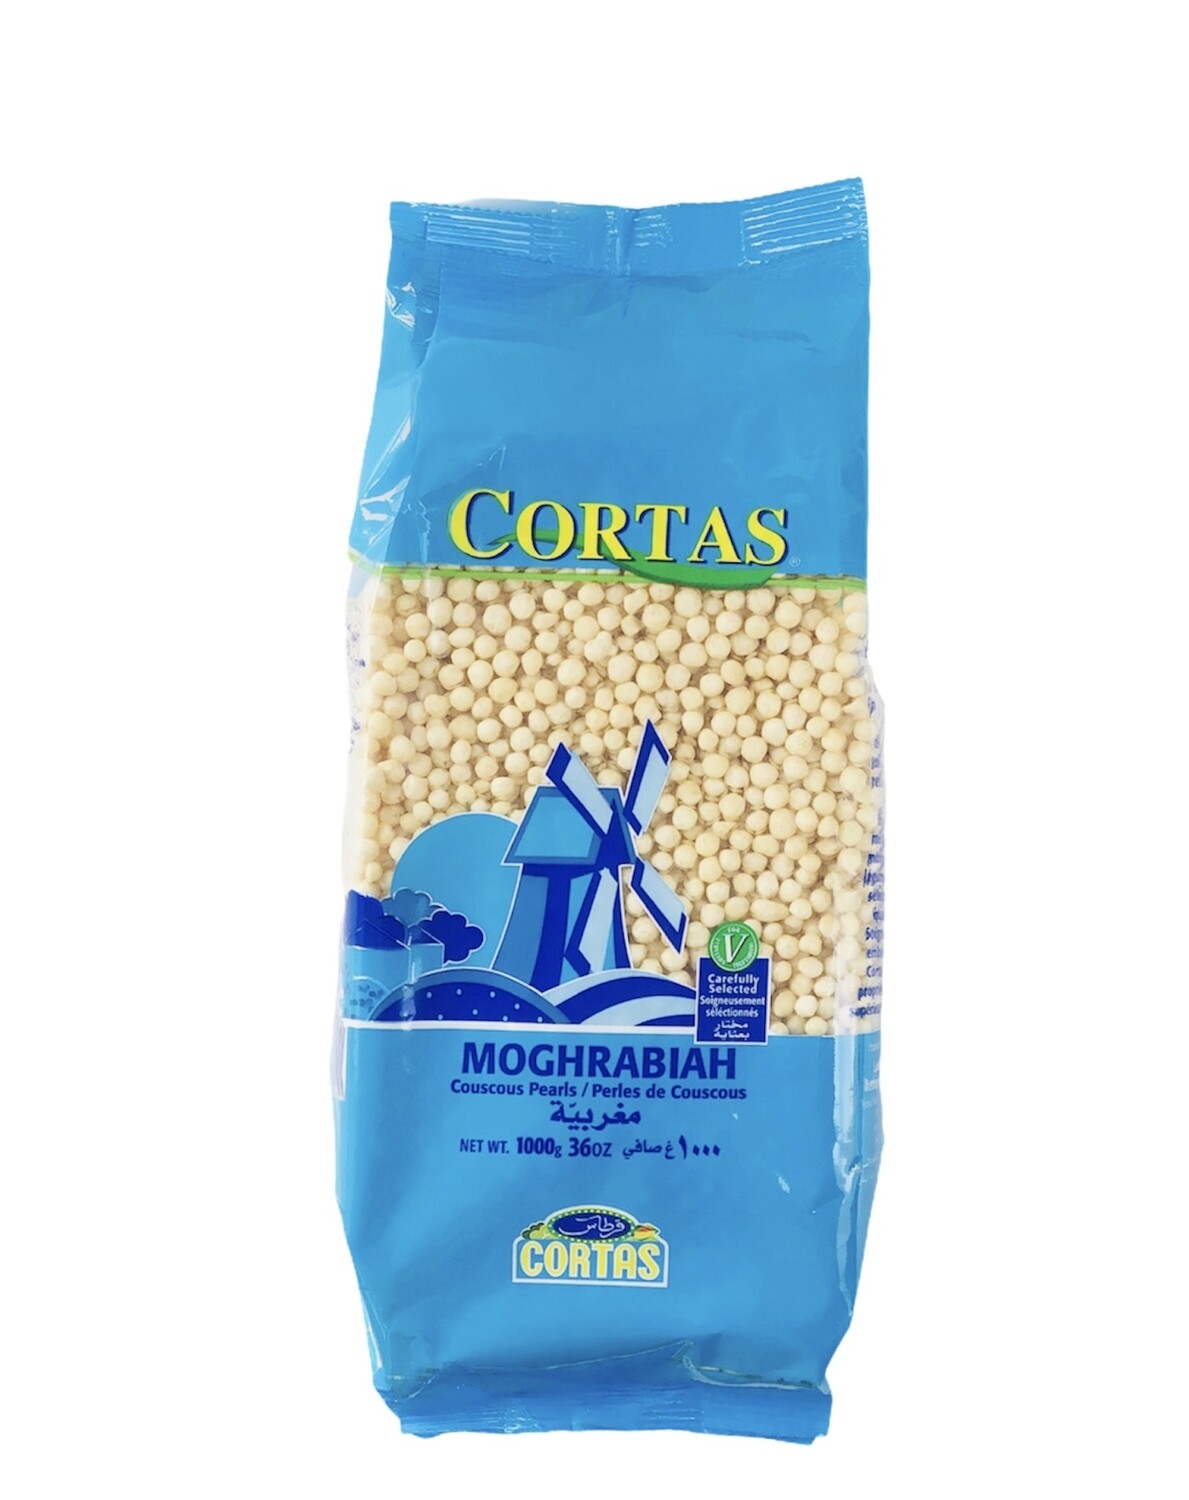 Cortas Dry Moghrabiah 12x2lb